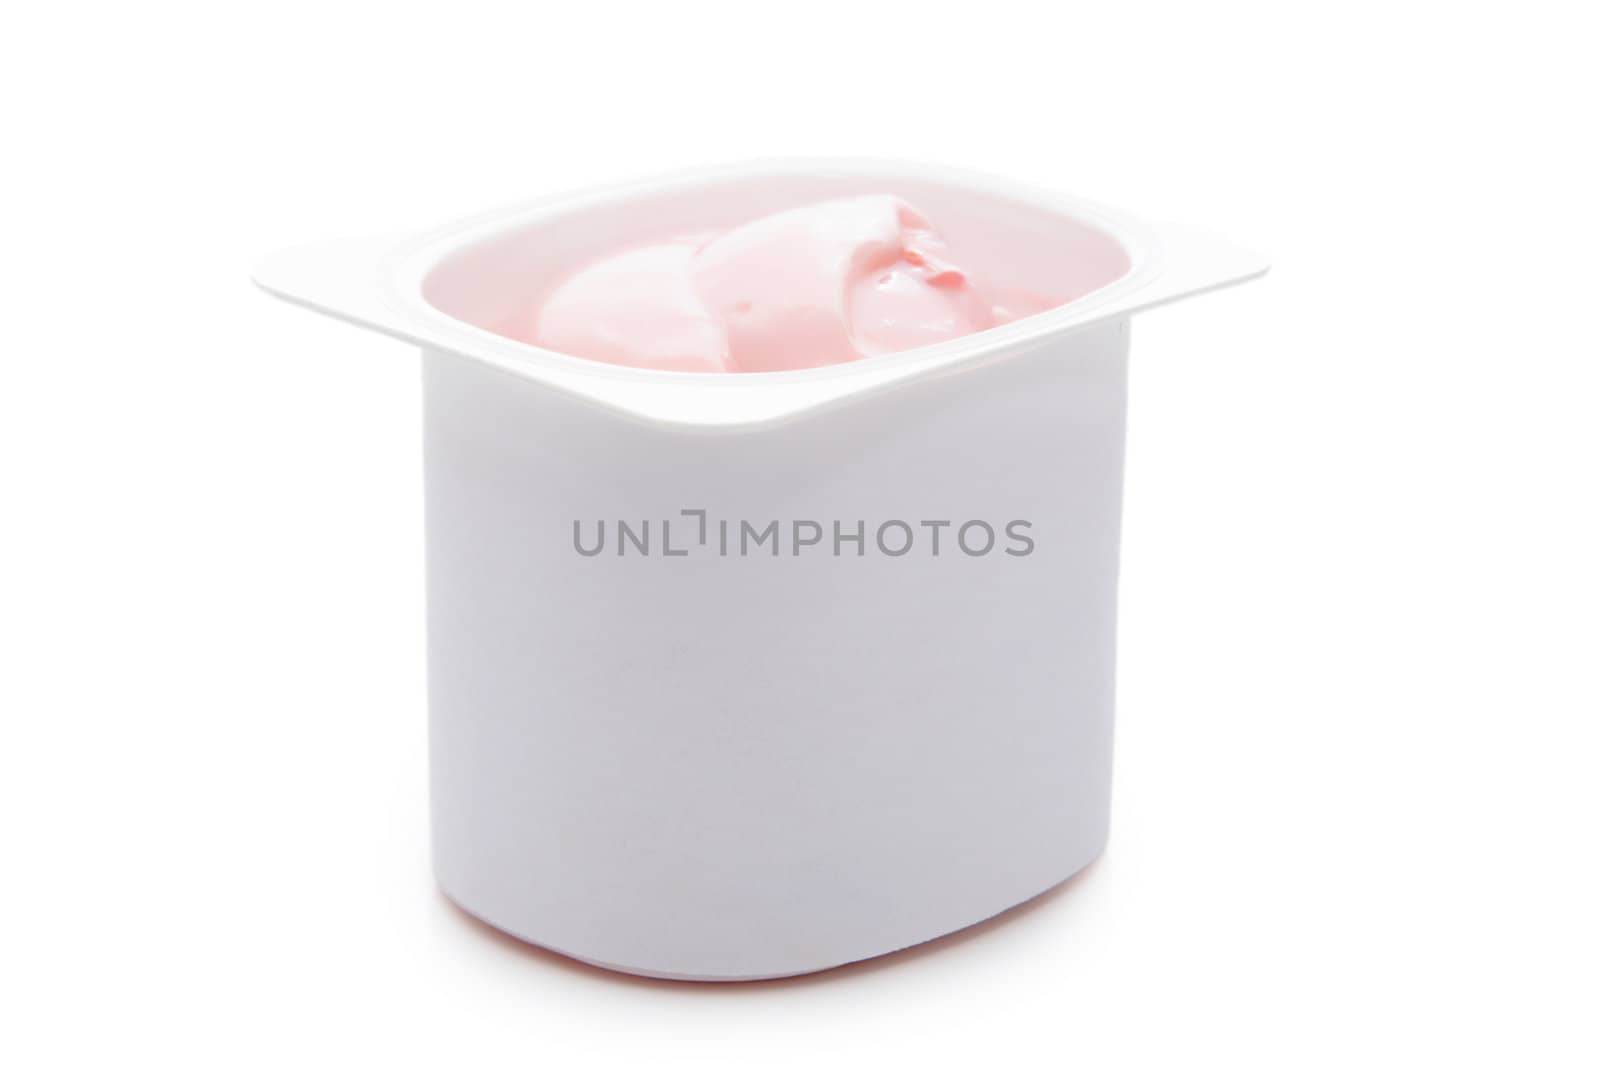 single portion of strawberry yogurt, isolated on white